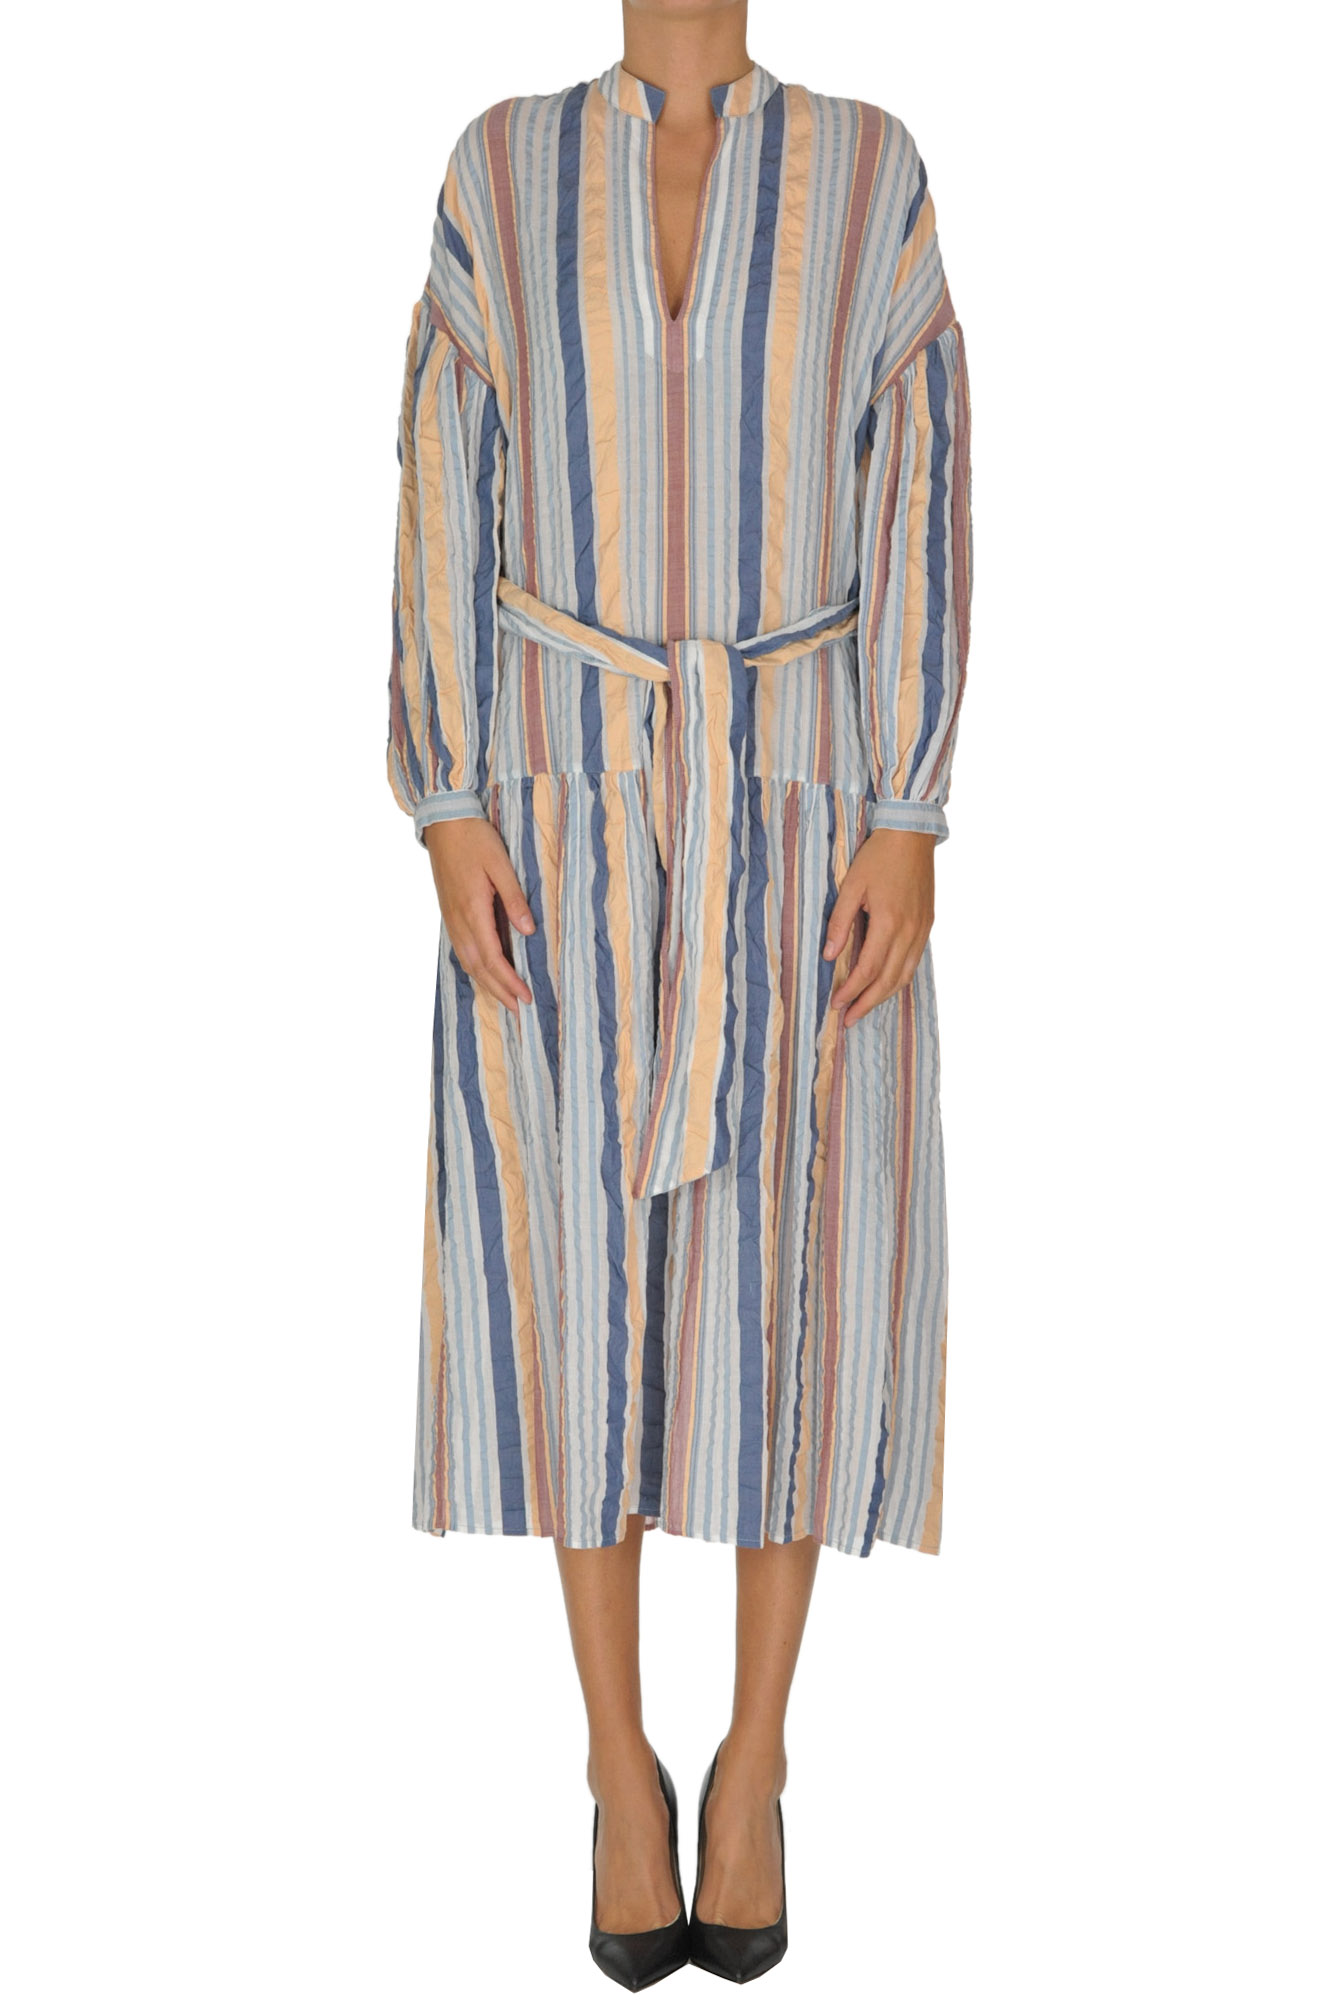 Ulla Johnson Striped Cotton Dress In Multicoloured